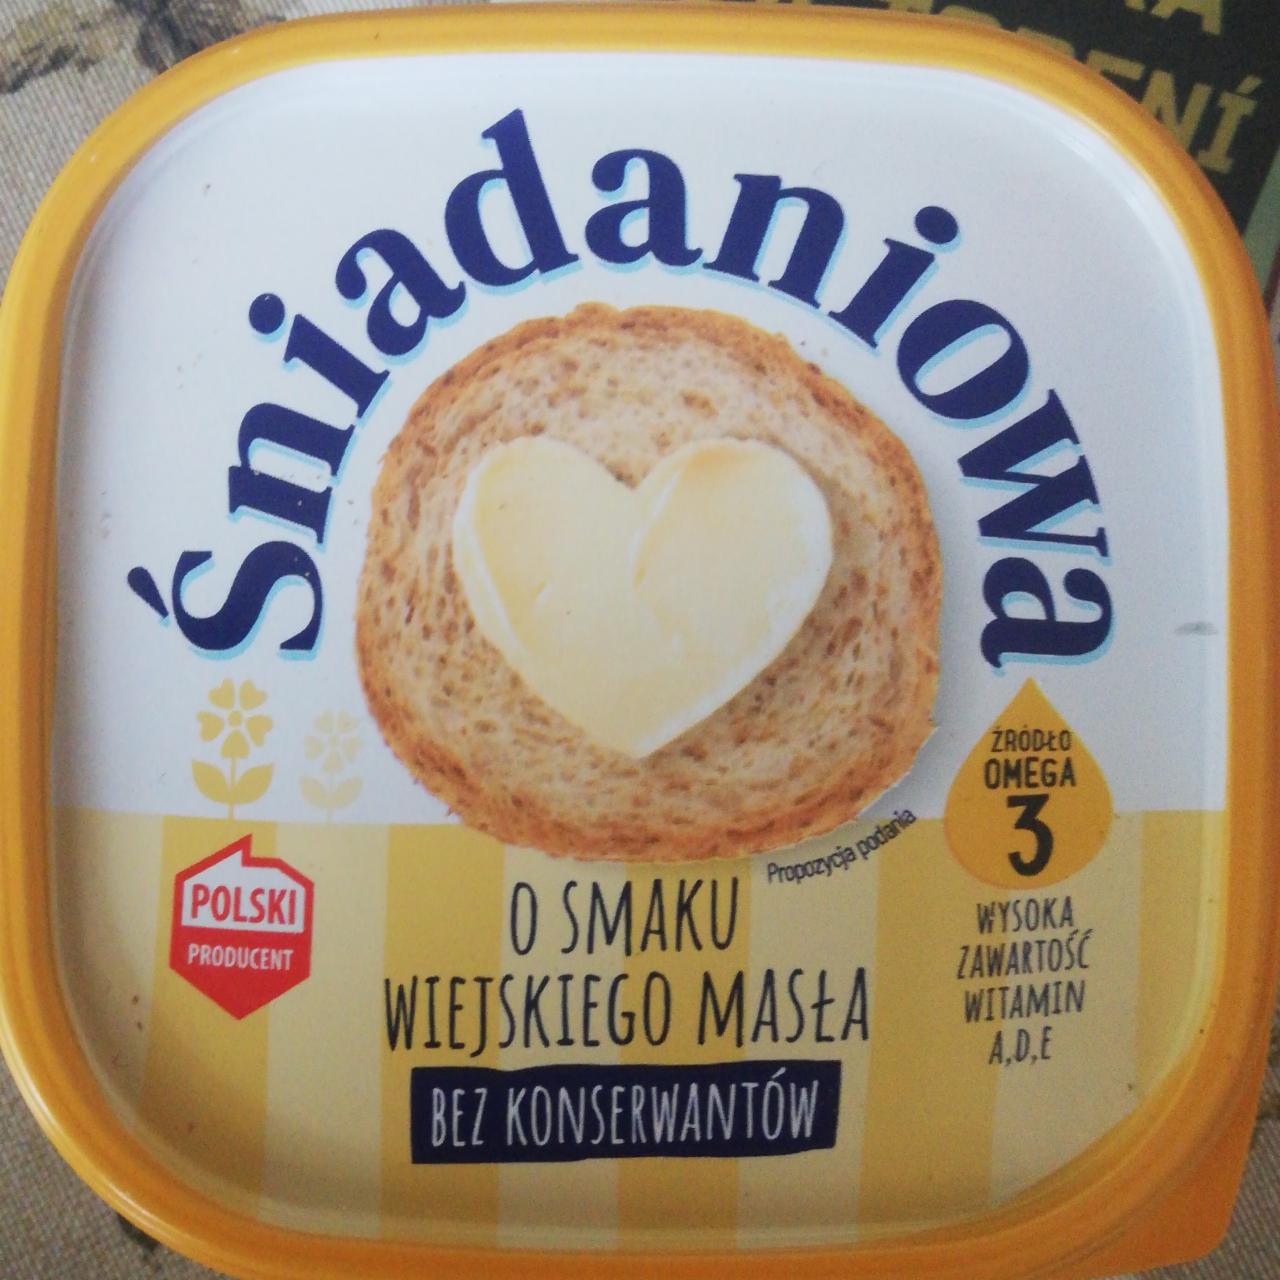 Zdjęcia - Bielmar margaryna Śniadaniowa o smaku Wiejskiego Masła